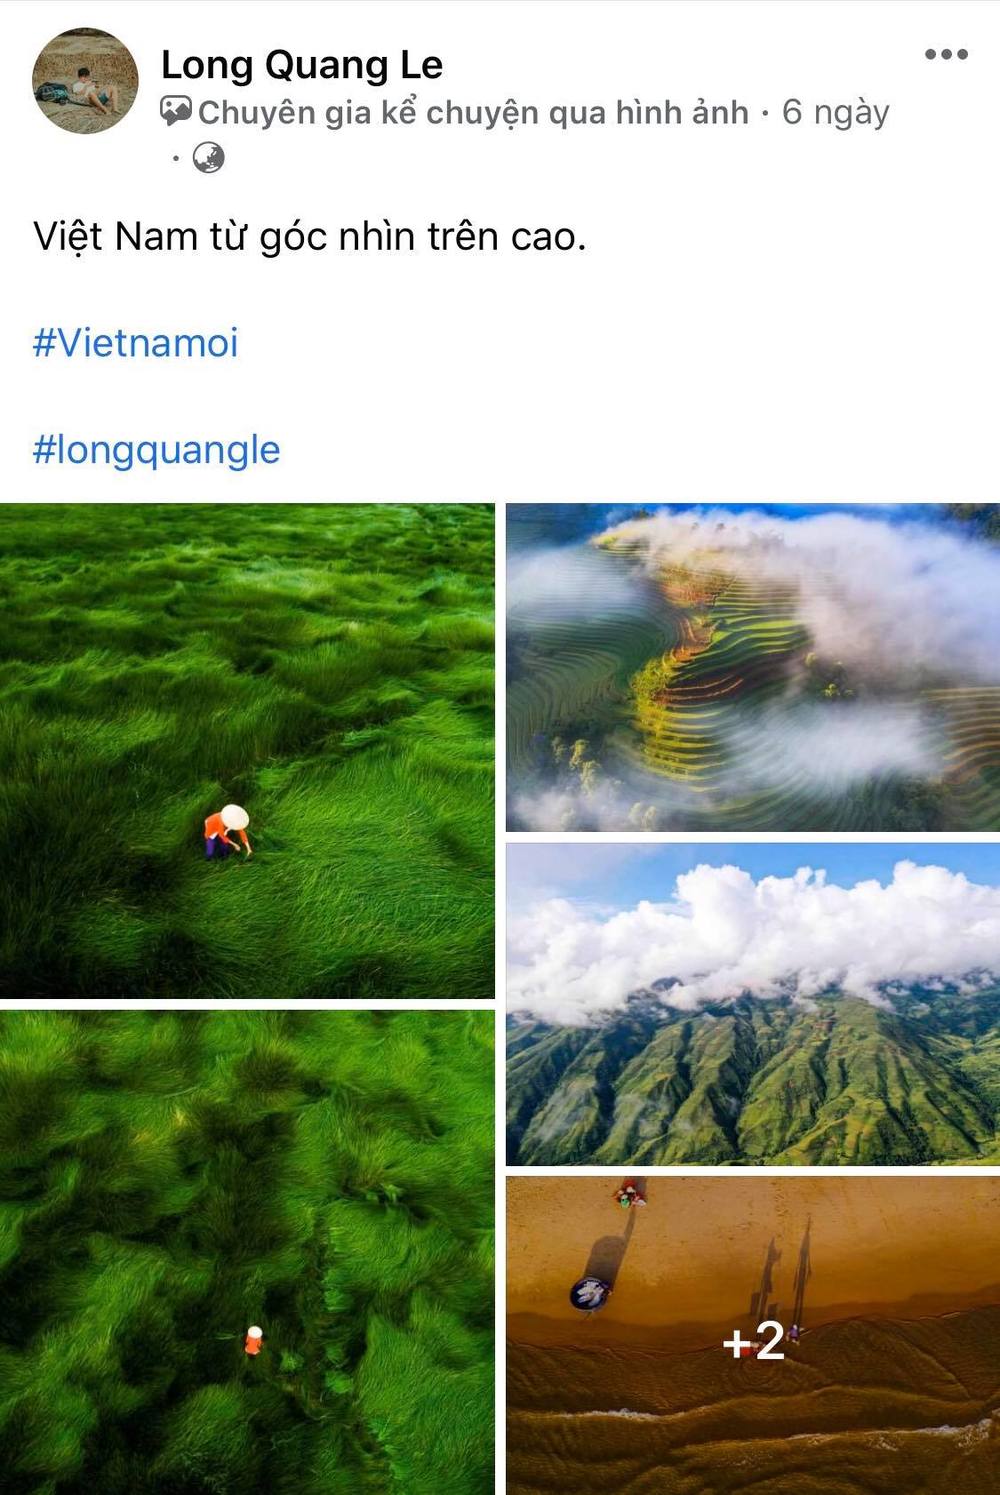  
Bộ ảnh Việt Nam từ góc nhìn trên cao cũng đầy tính nghệ thuật. (Ảnh: Chụp màn hình)